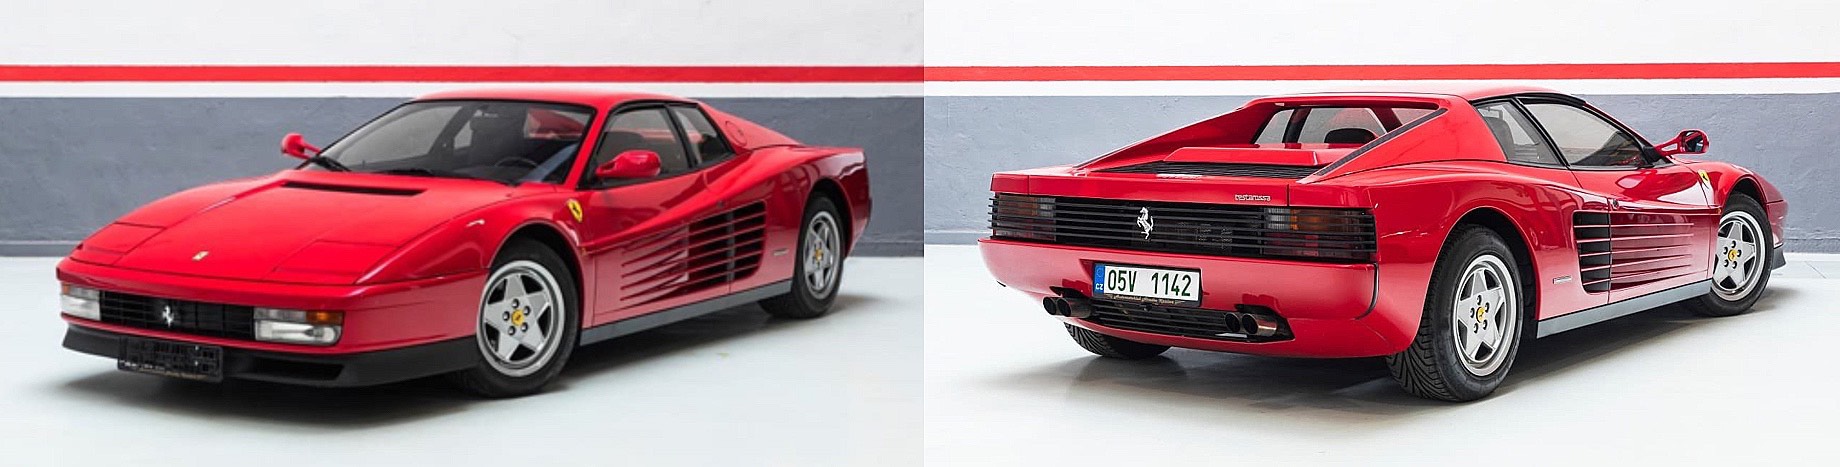 Швейцарцы анонсировали рестомод Ferrari Testarossa